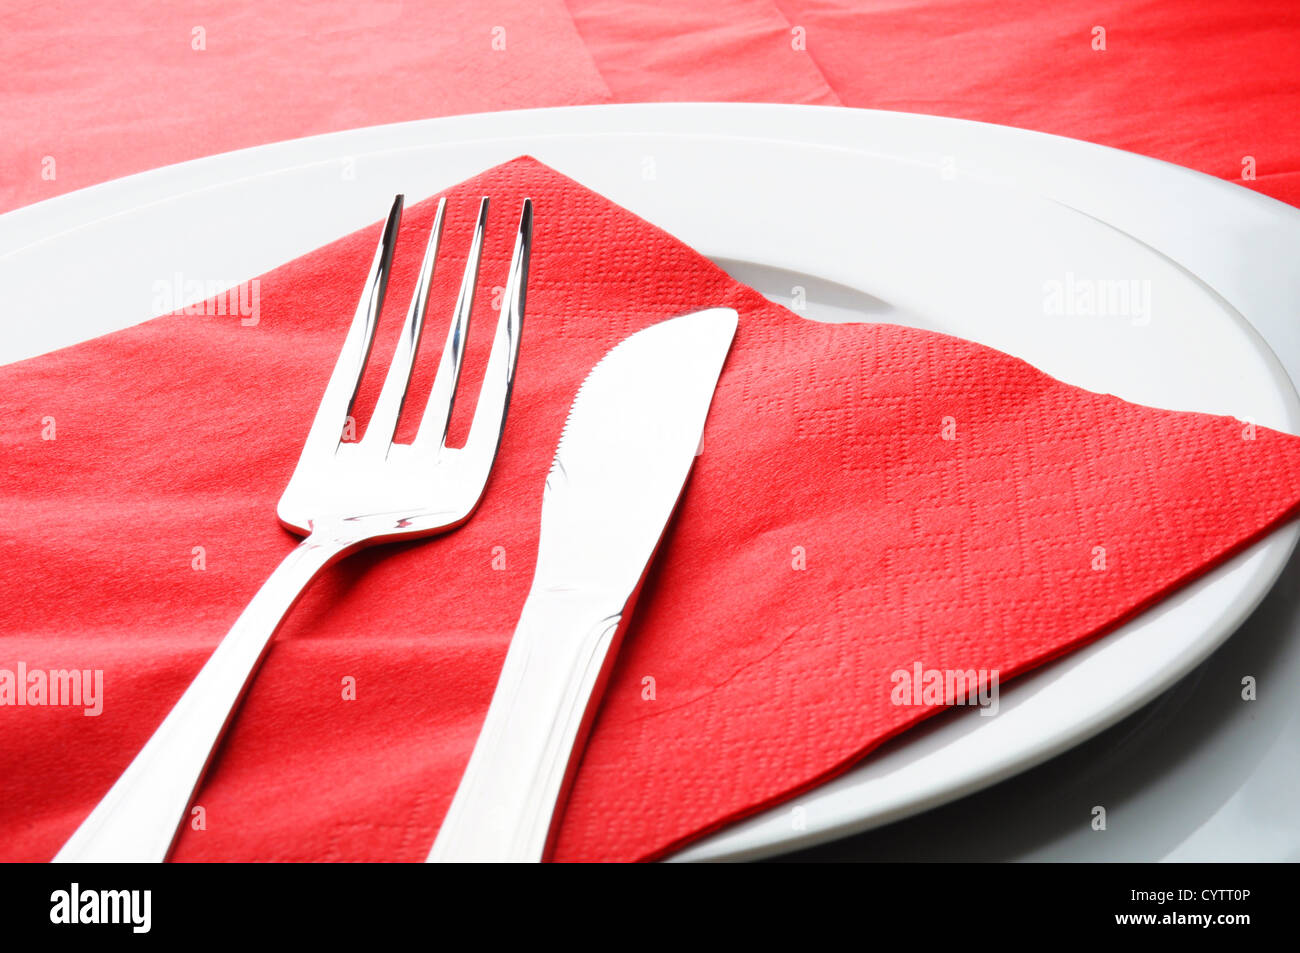 Fourchette et couteau montrant la nourriture ou concept de restaurant Banque D'Images